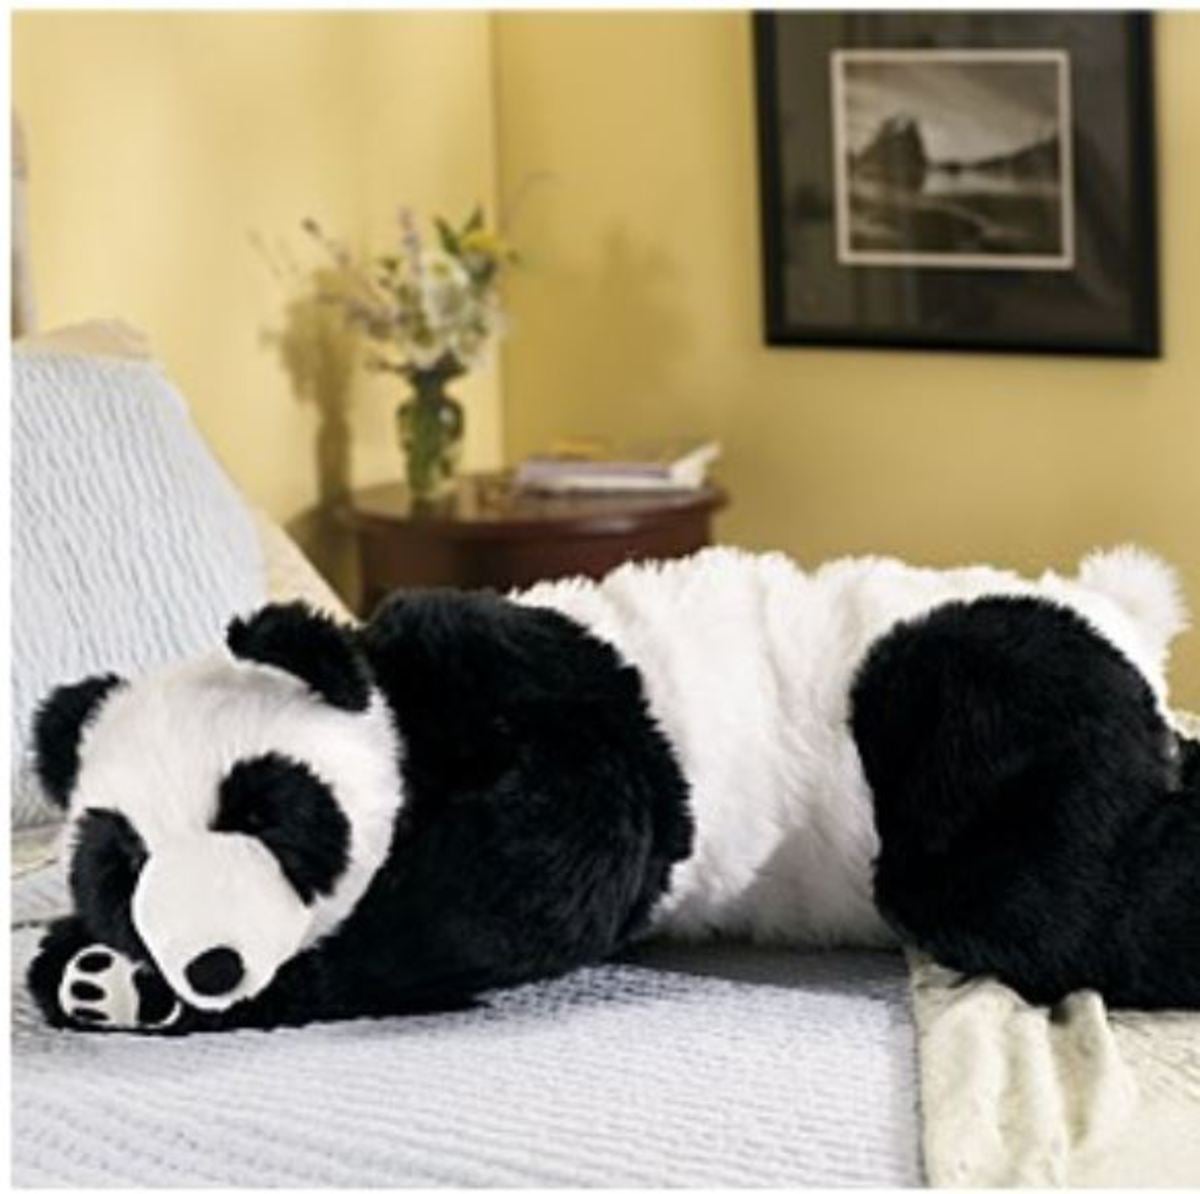 Panda Bear Panda Bear Wind & Weather AC3941-PAN Super-Soft Big Bear Hug Body Pillow with Real